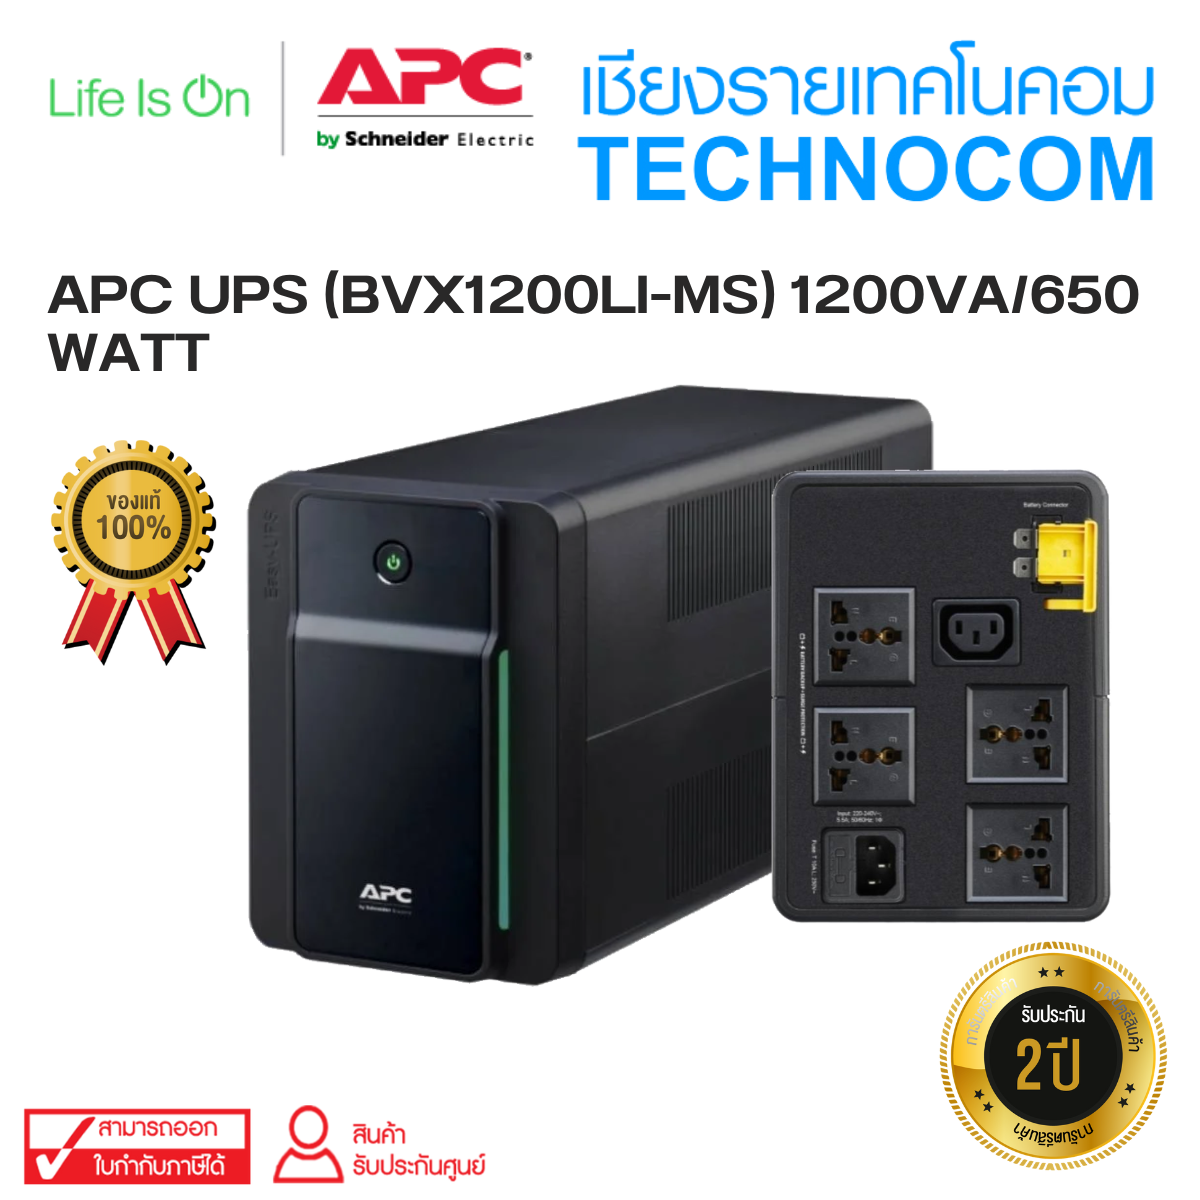 APC UPS (BVX1200LI-MS) 1200VA/650 WATT